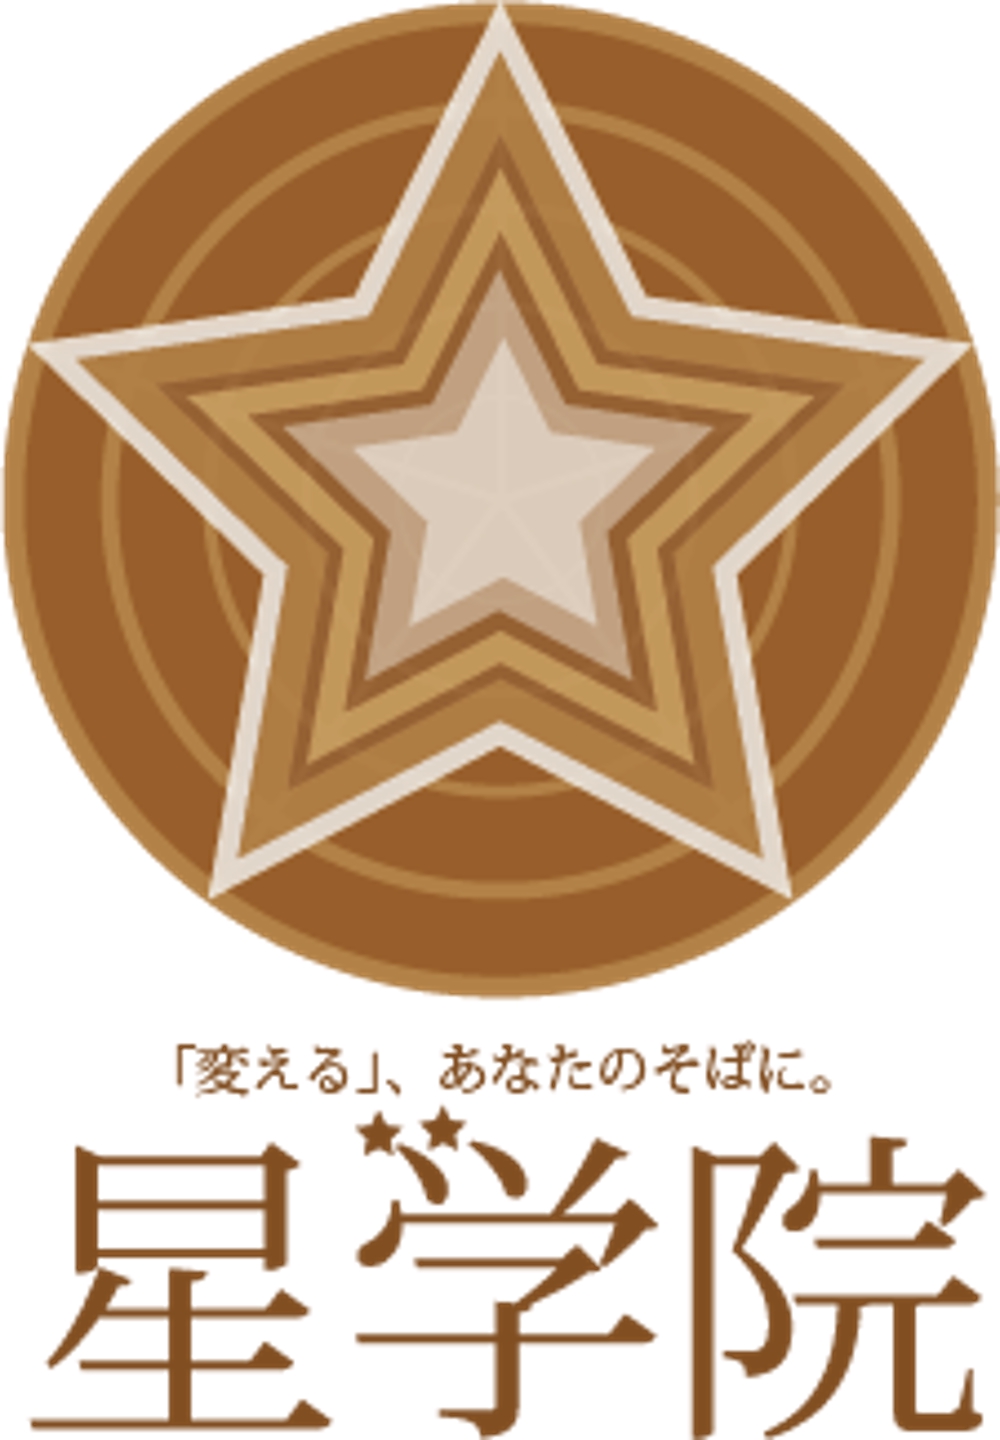 教育塾「星学院」のロゴ